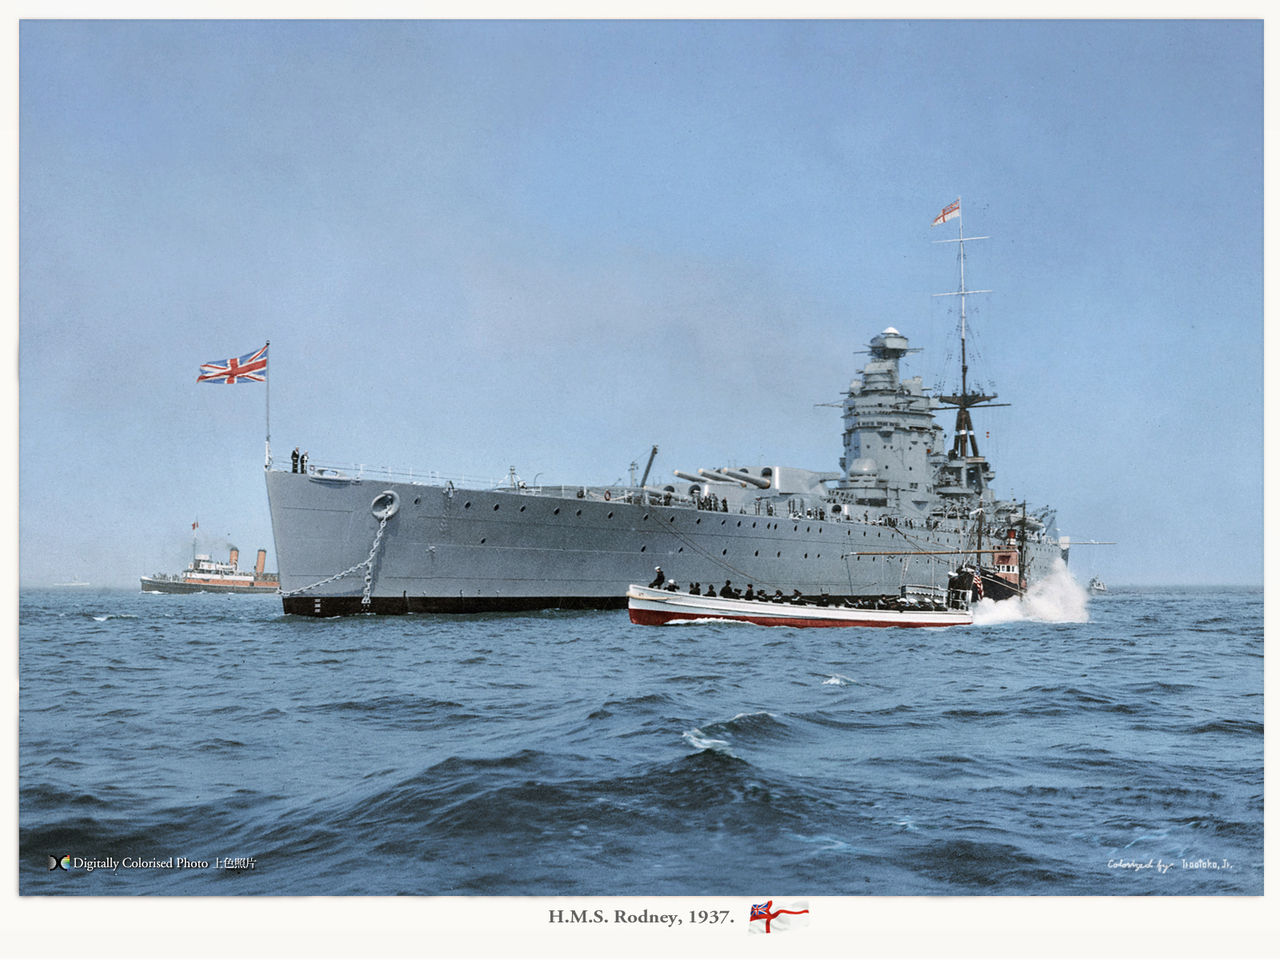 HMS Rodney, colorized by Irootoko Jr